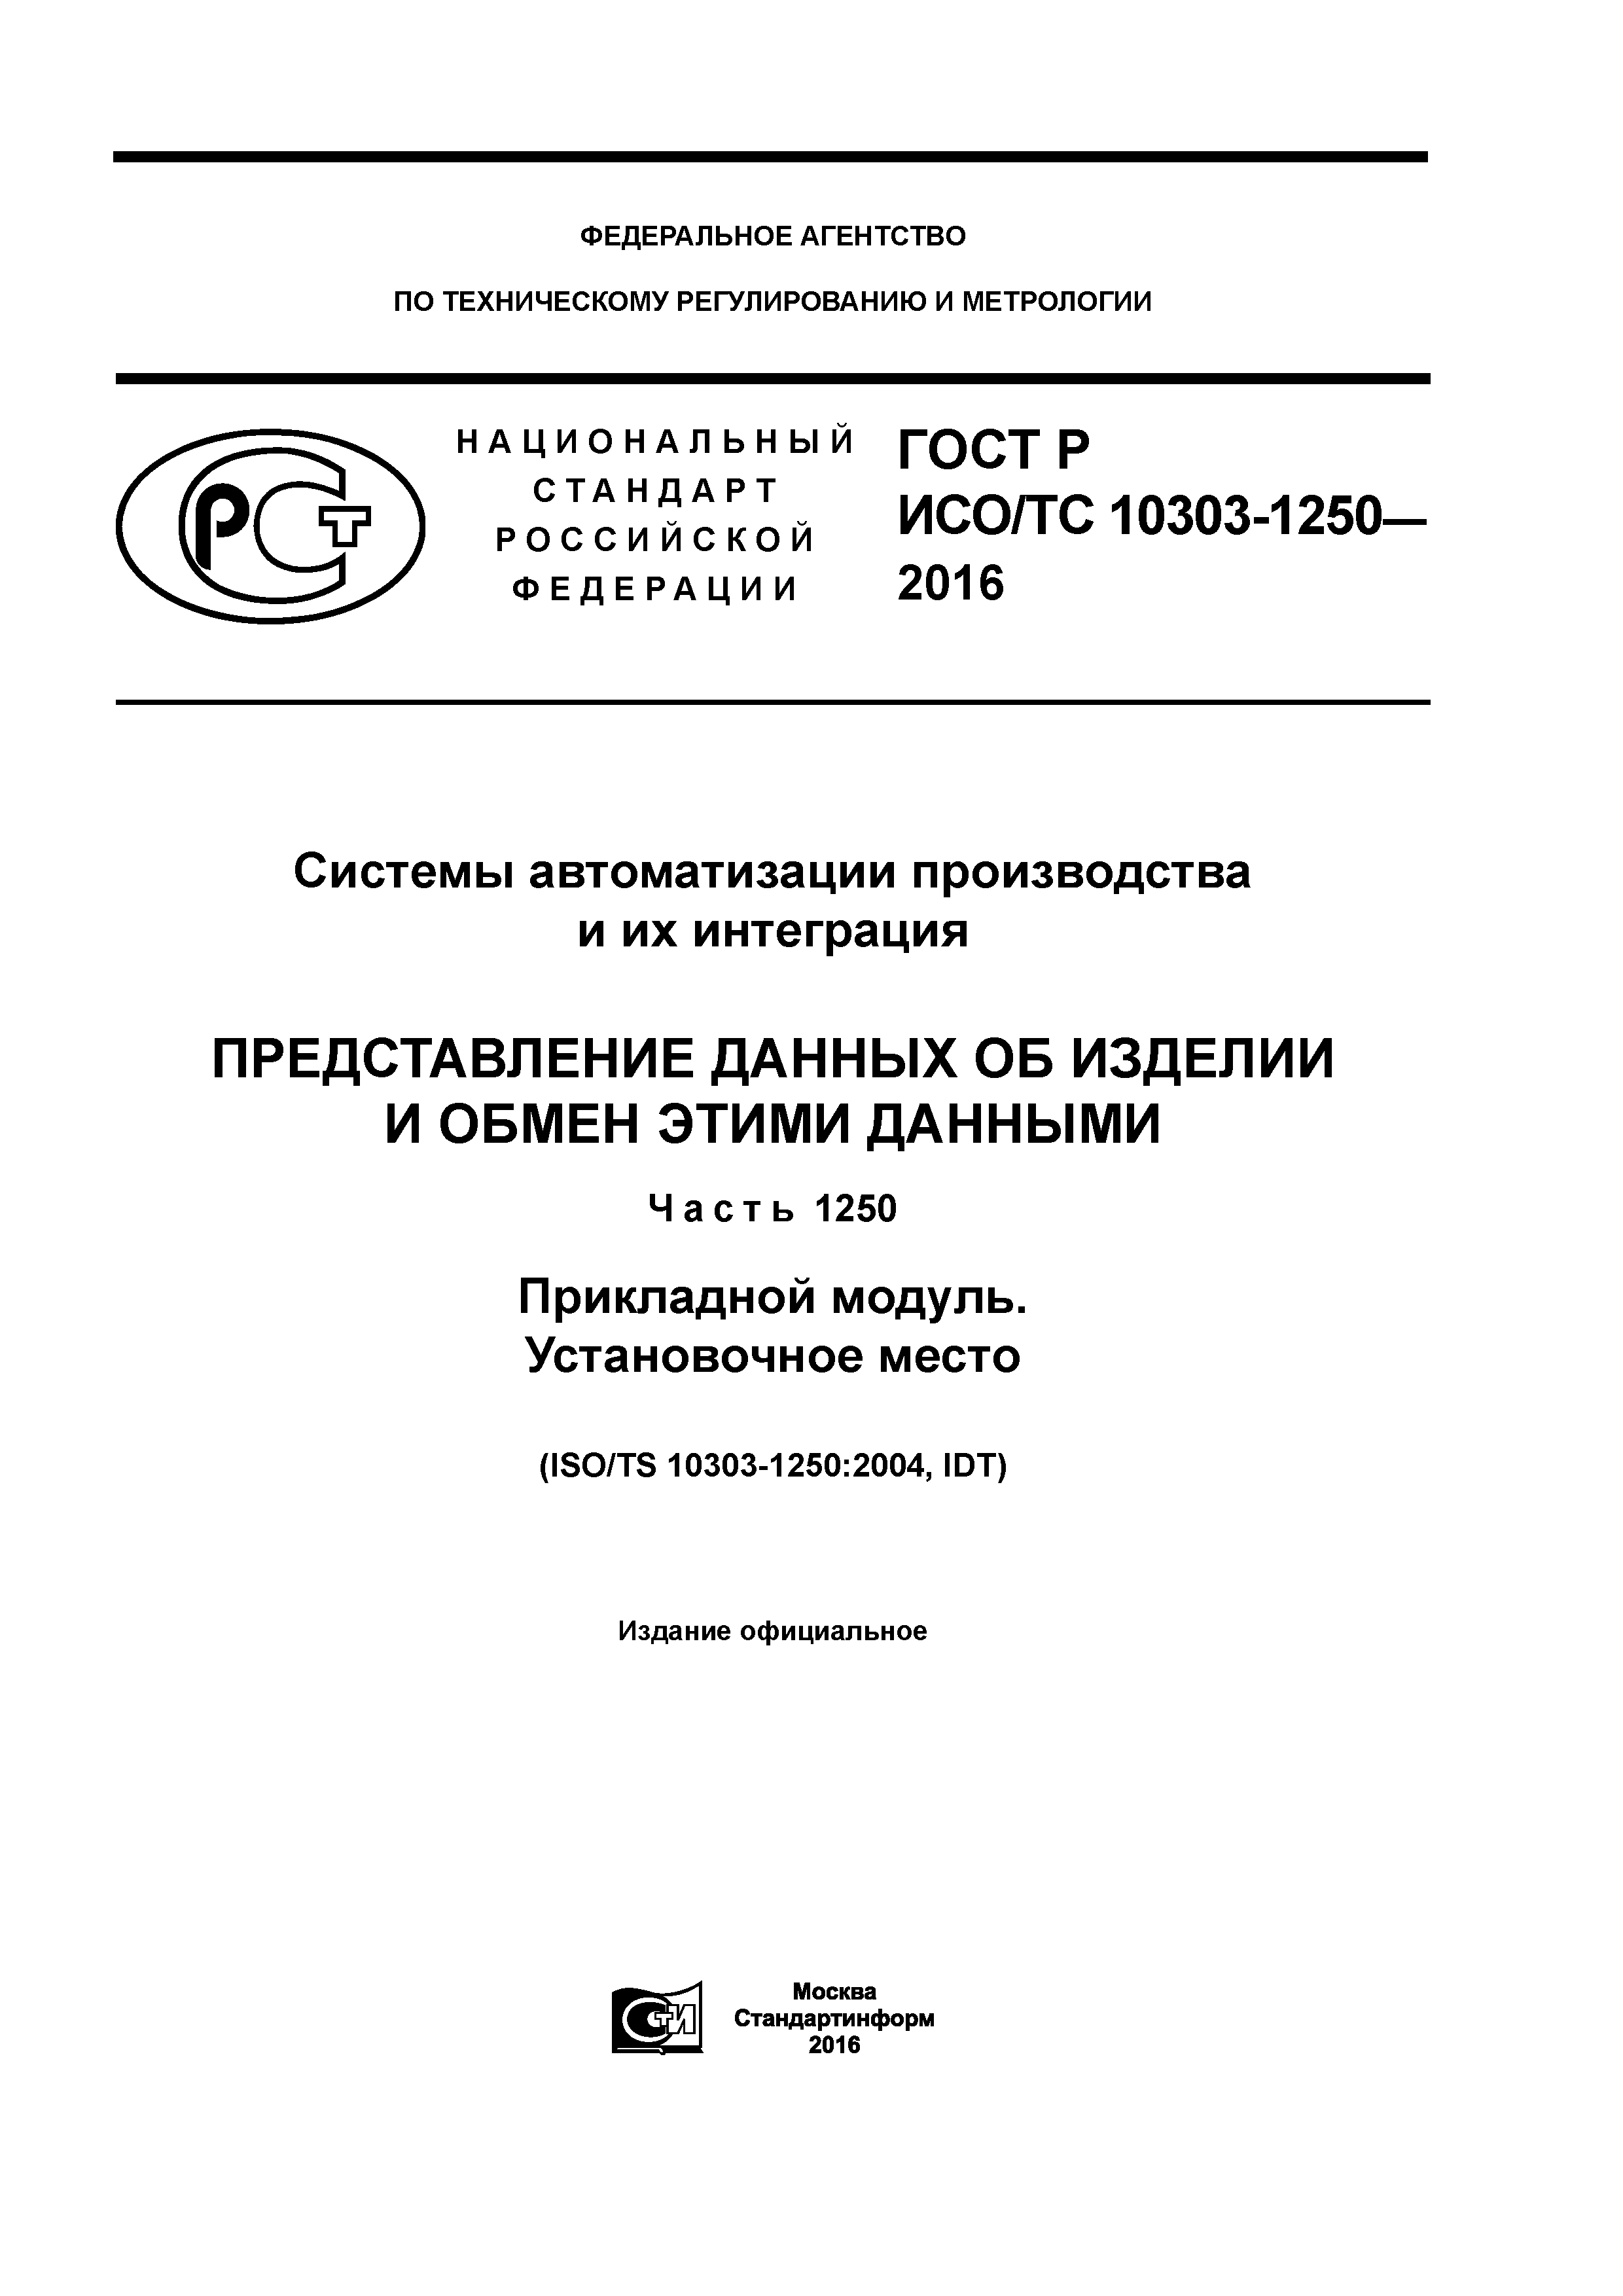 ГОСТ Р ИСО/ТС 10303-1250-2016